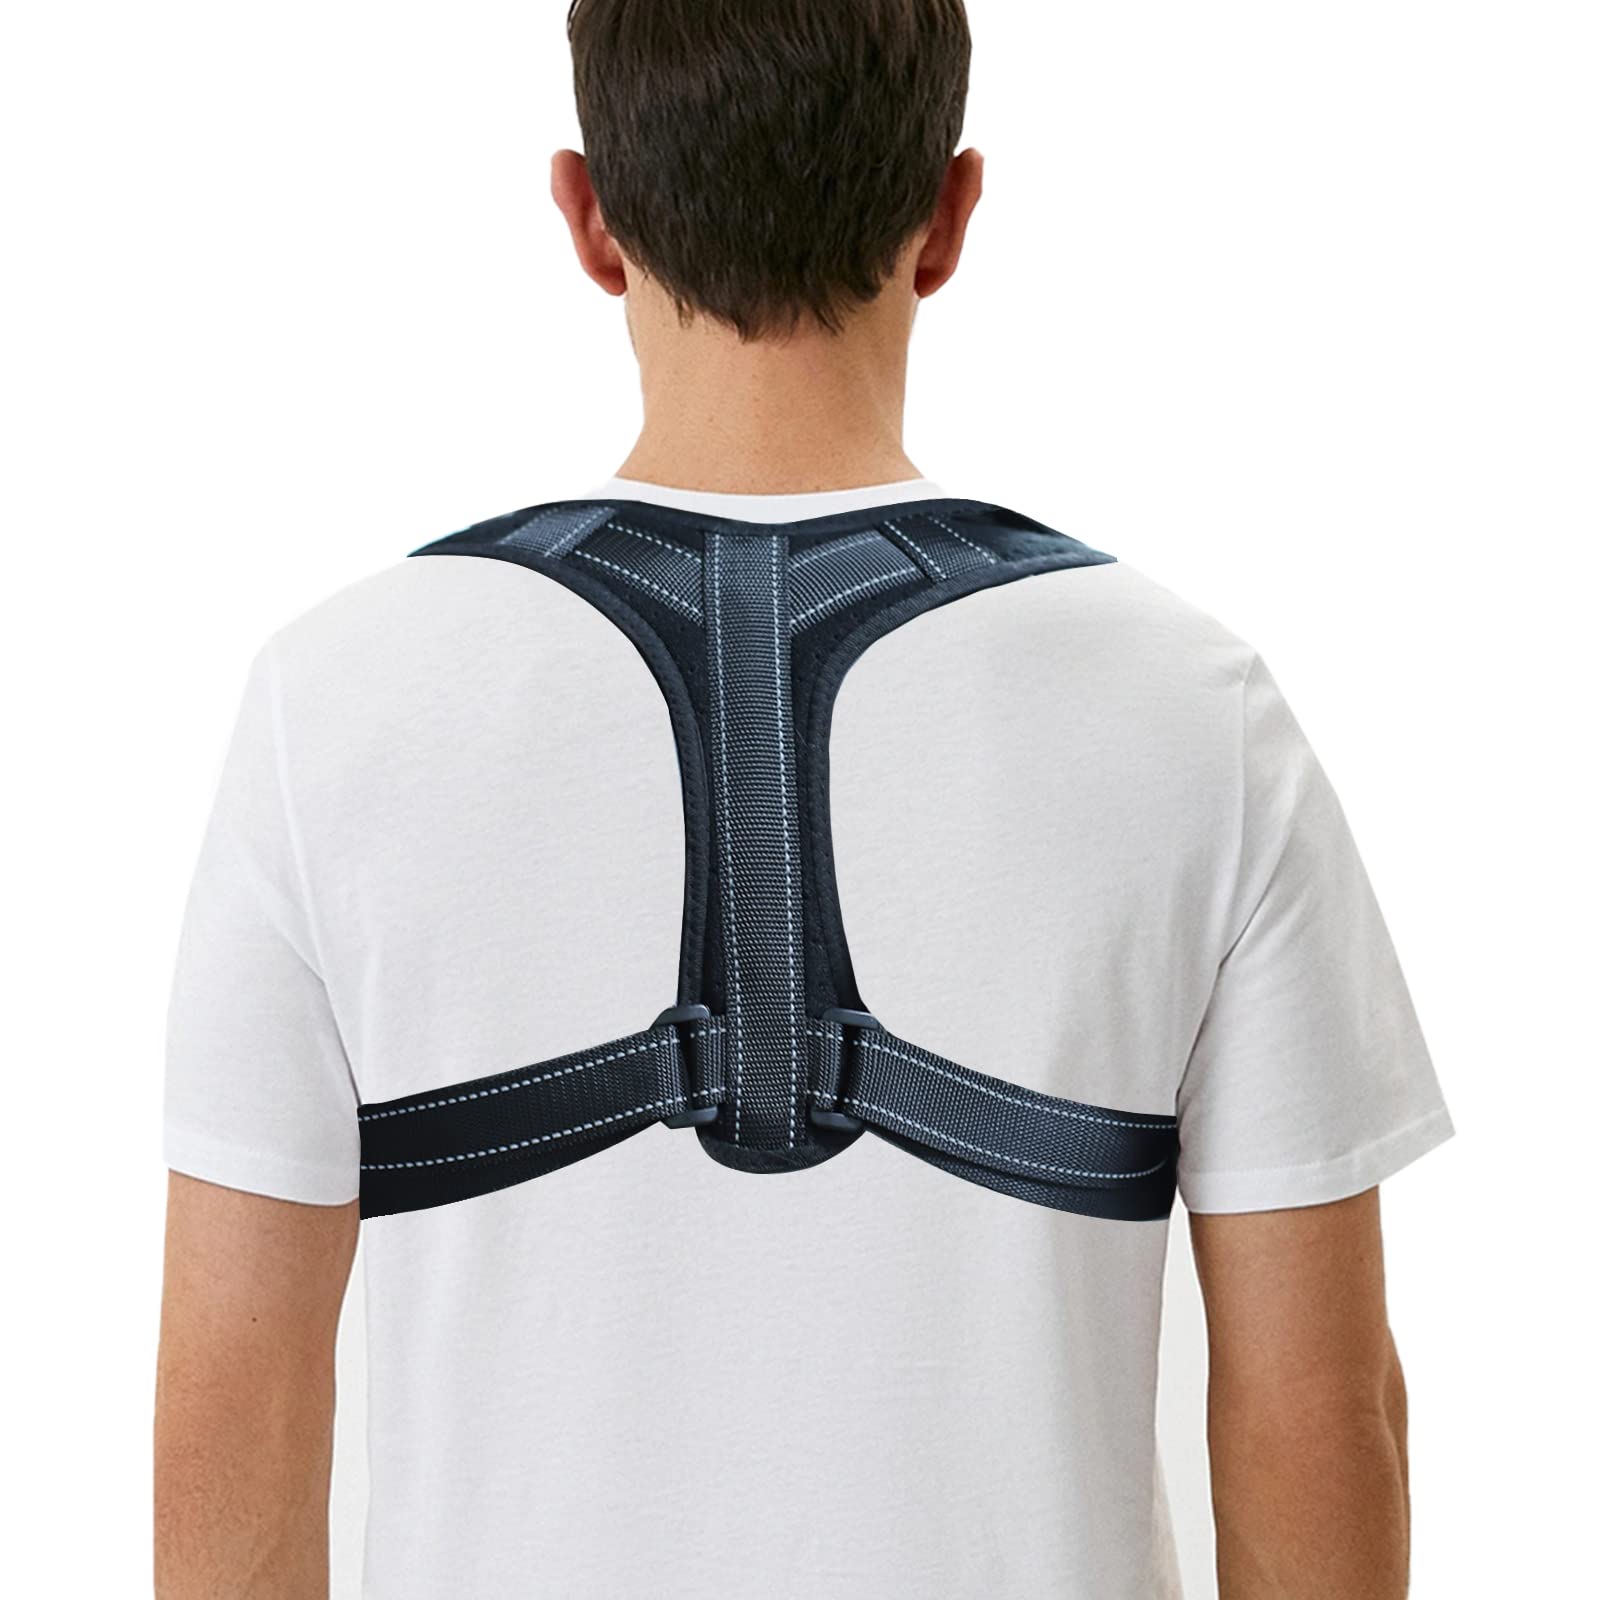 Posture Corrector Body Brace Bad Back Lumbar Shoulder Support Belt